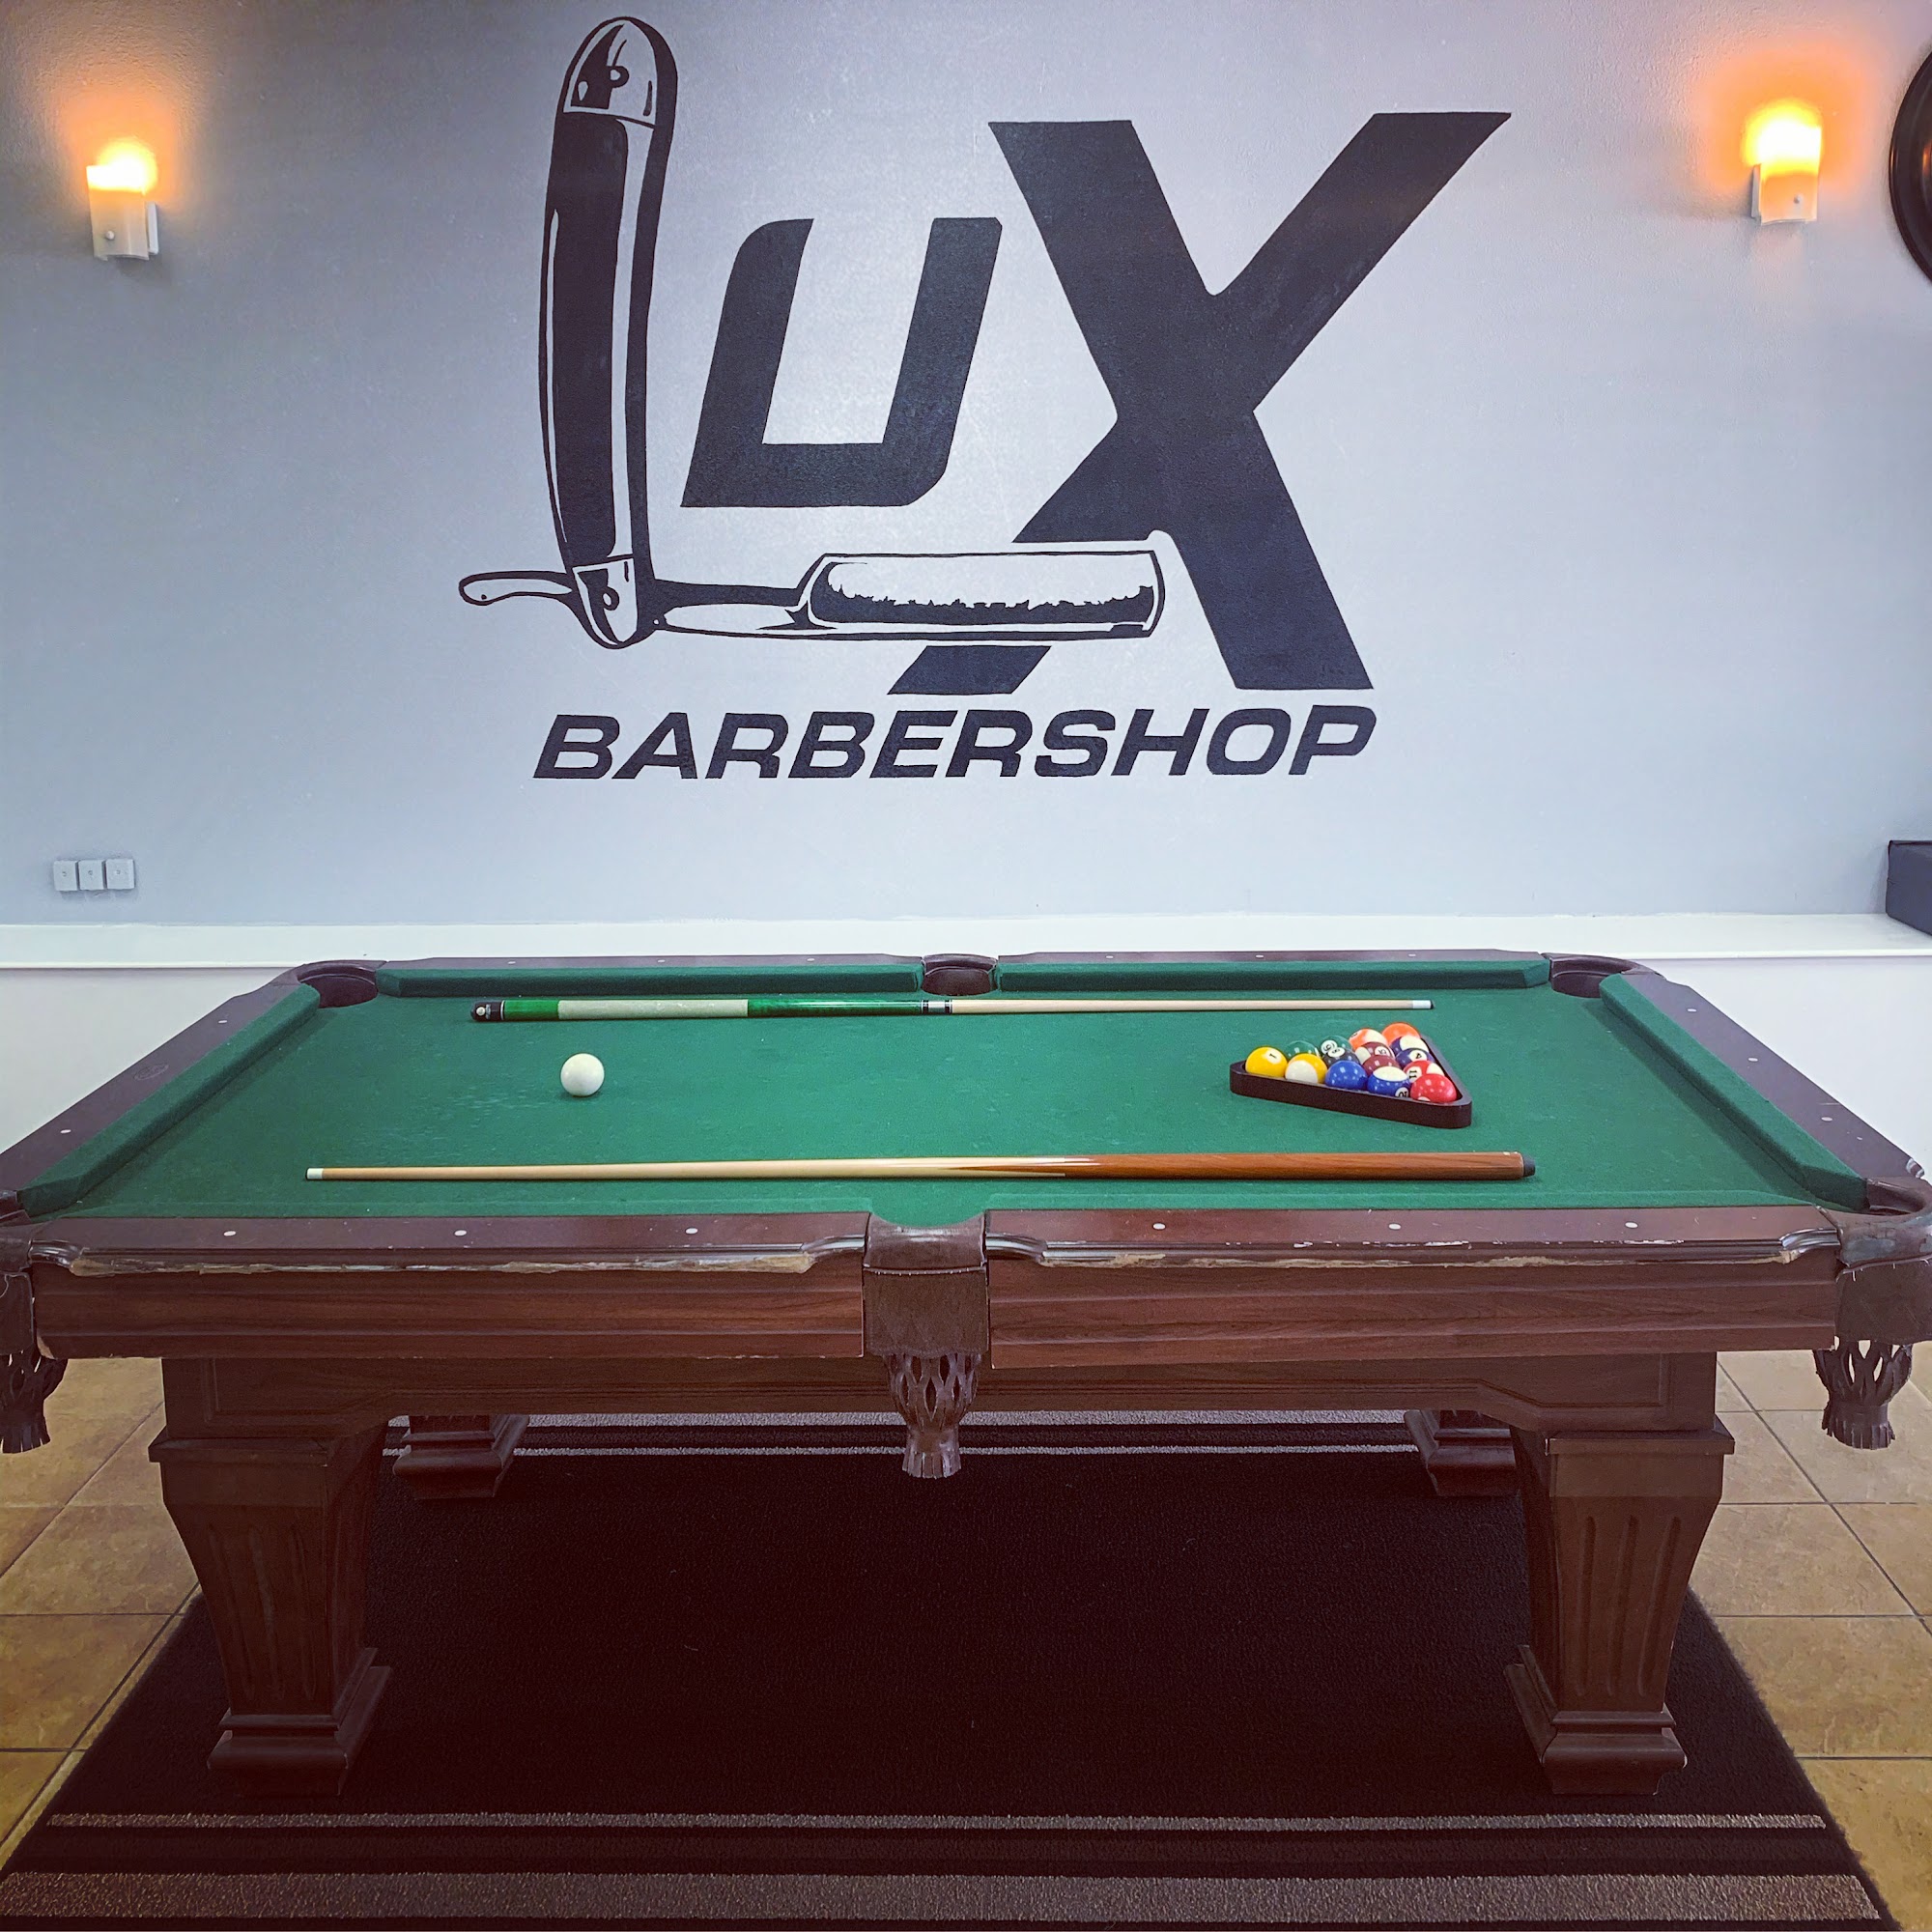 Lux Barbershop